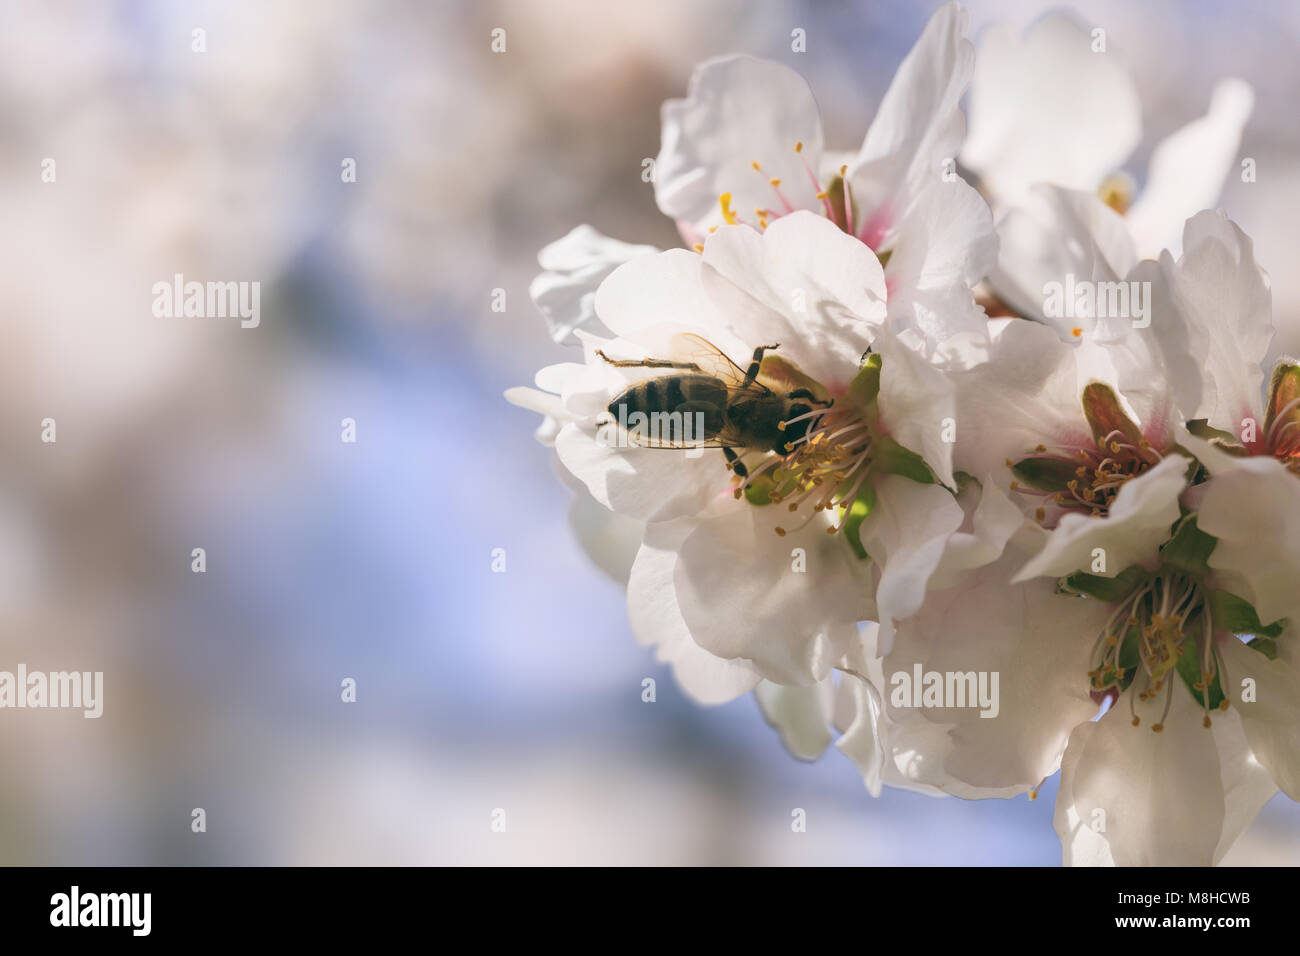 La récolte de l'abeille le pollen de fleurs d'amandier, vue rapprochée, l'arrière-plan flou Banque D'Images